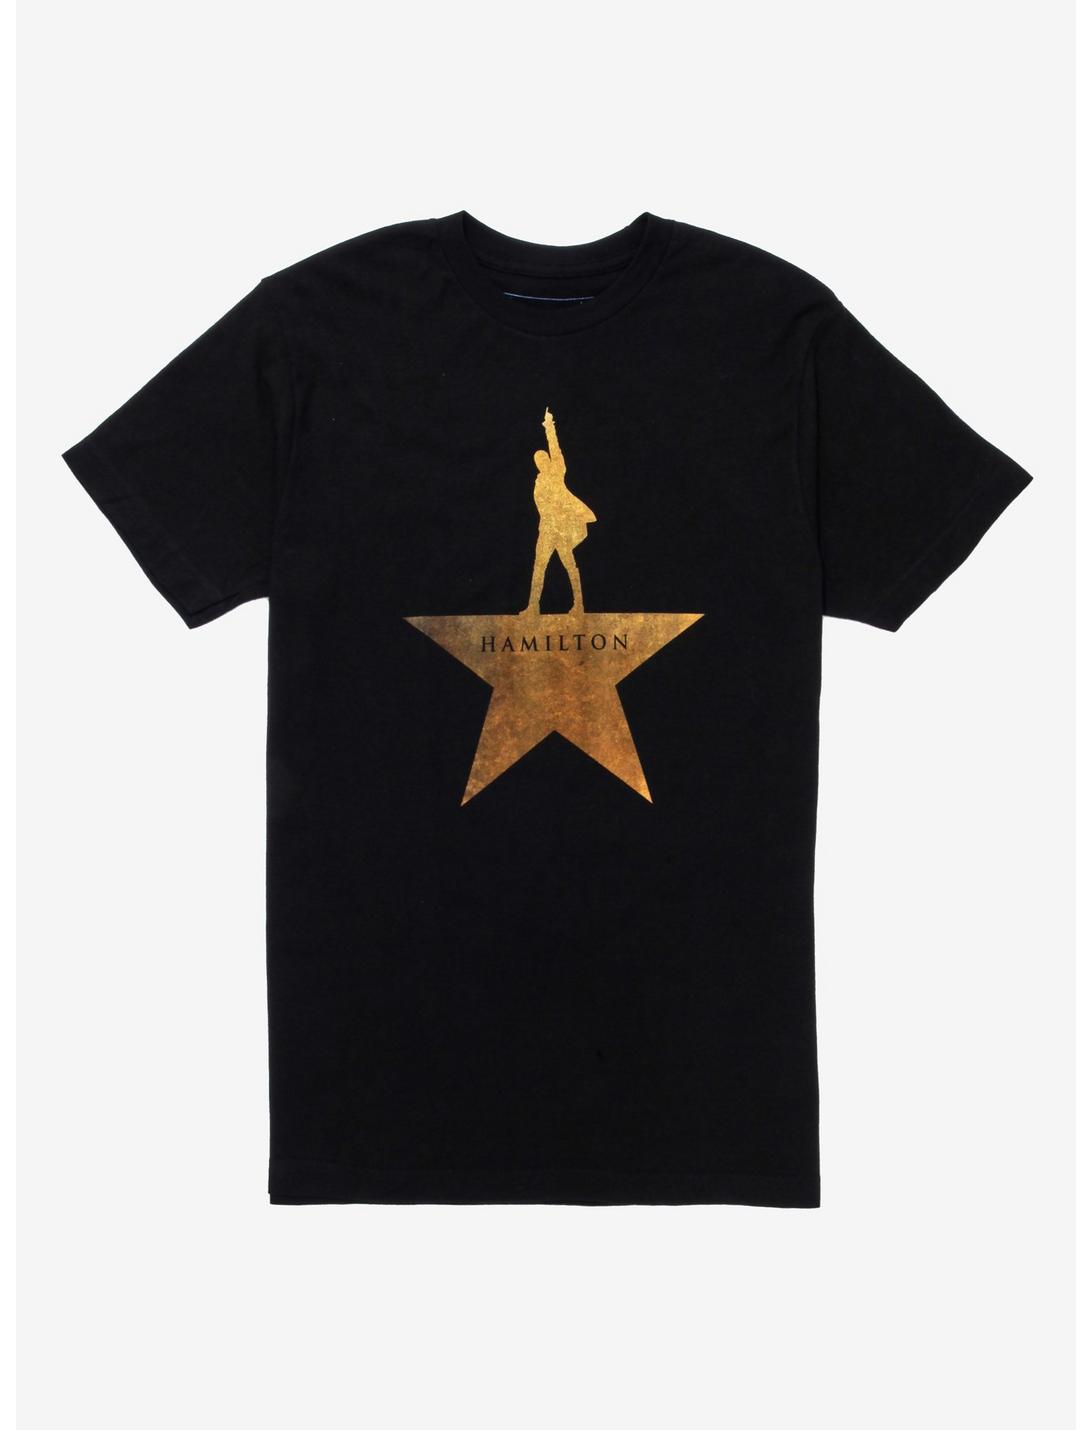 Hamilton Gold Star T-Shirt, BLACK, hi-res